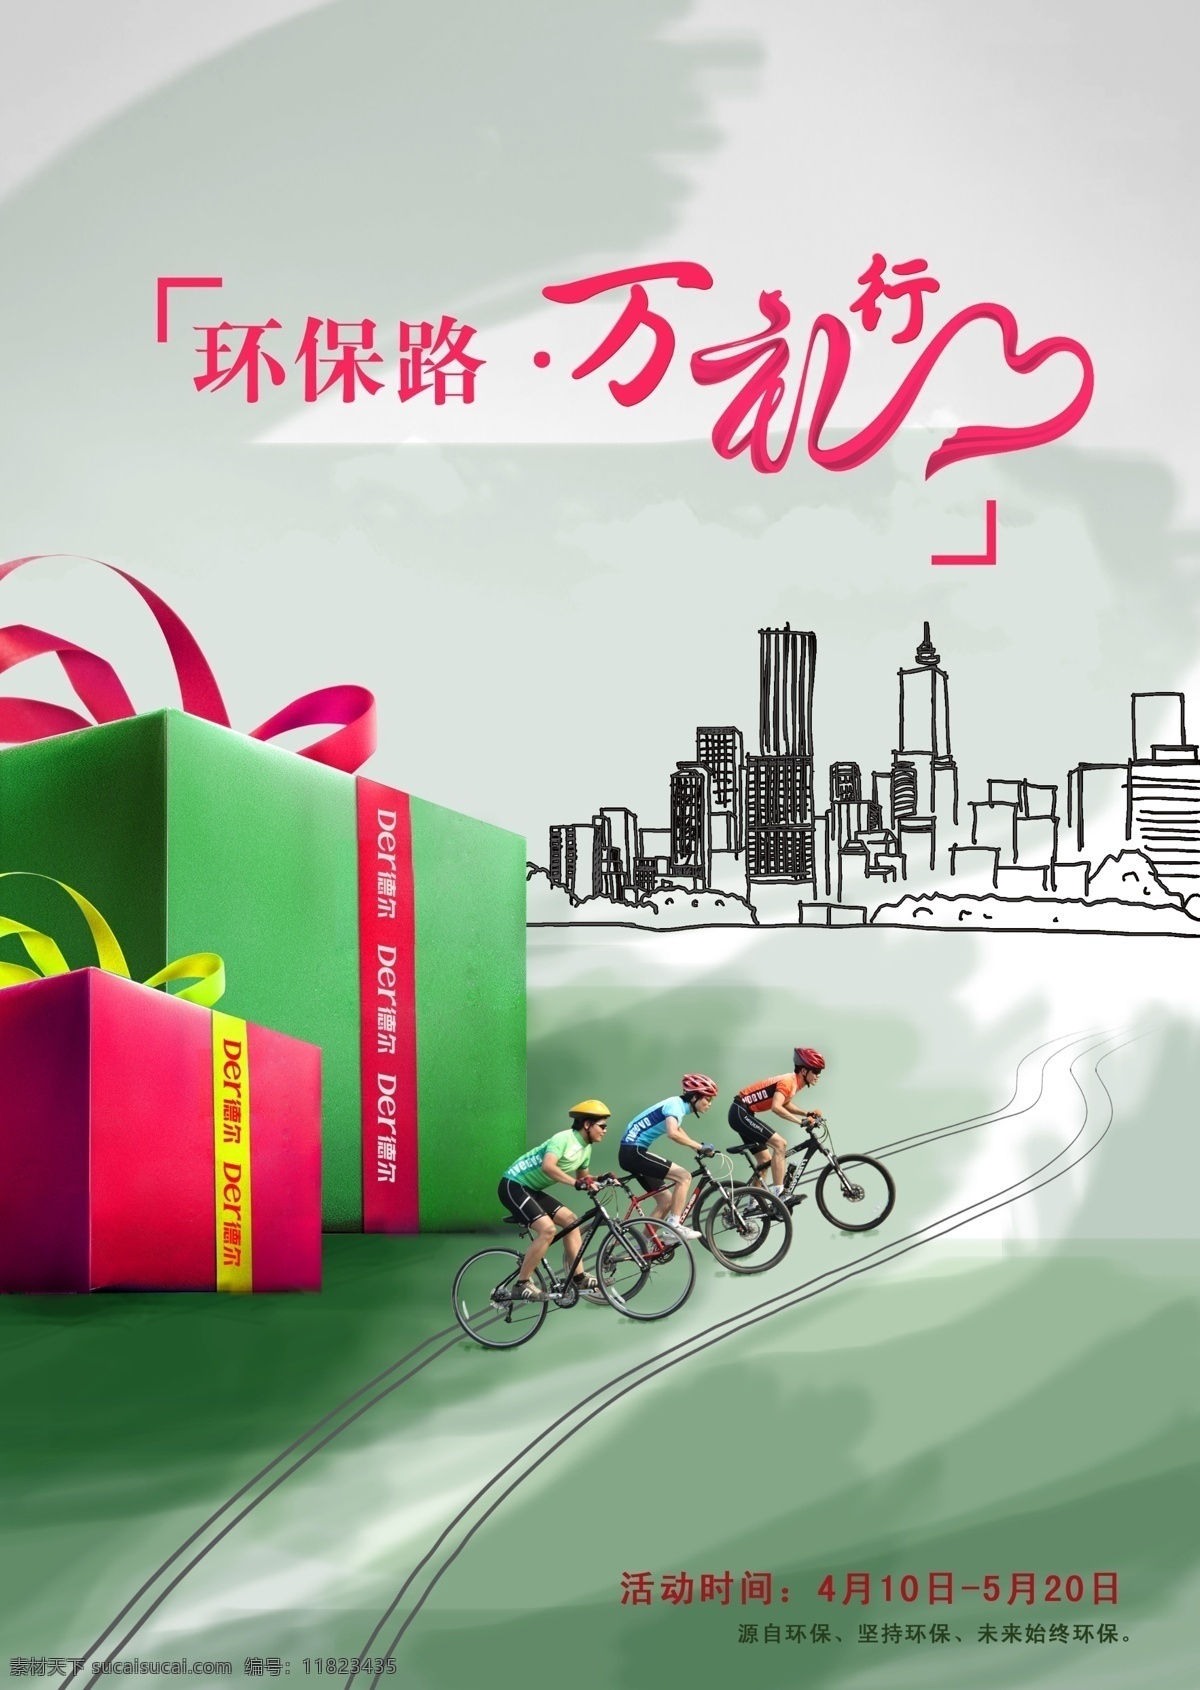 环保 城市环保行动 自行车比赛 自行车 环保行动 礼品多多 绿色出行 广告设计模板 源文件